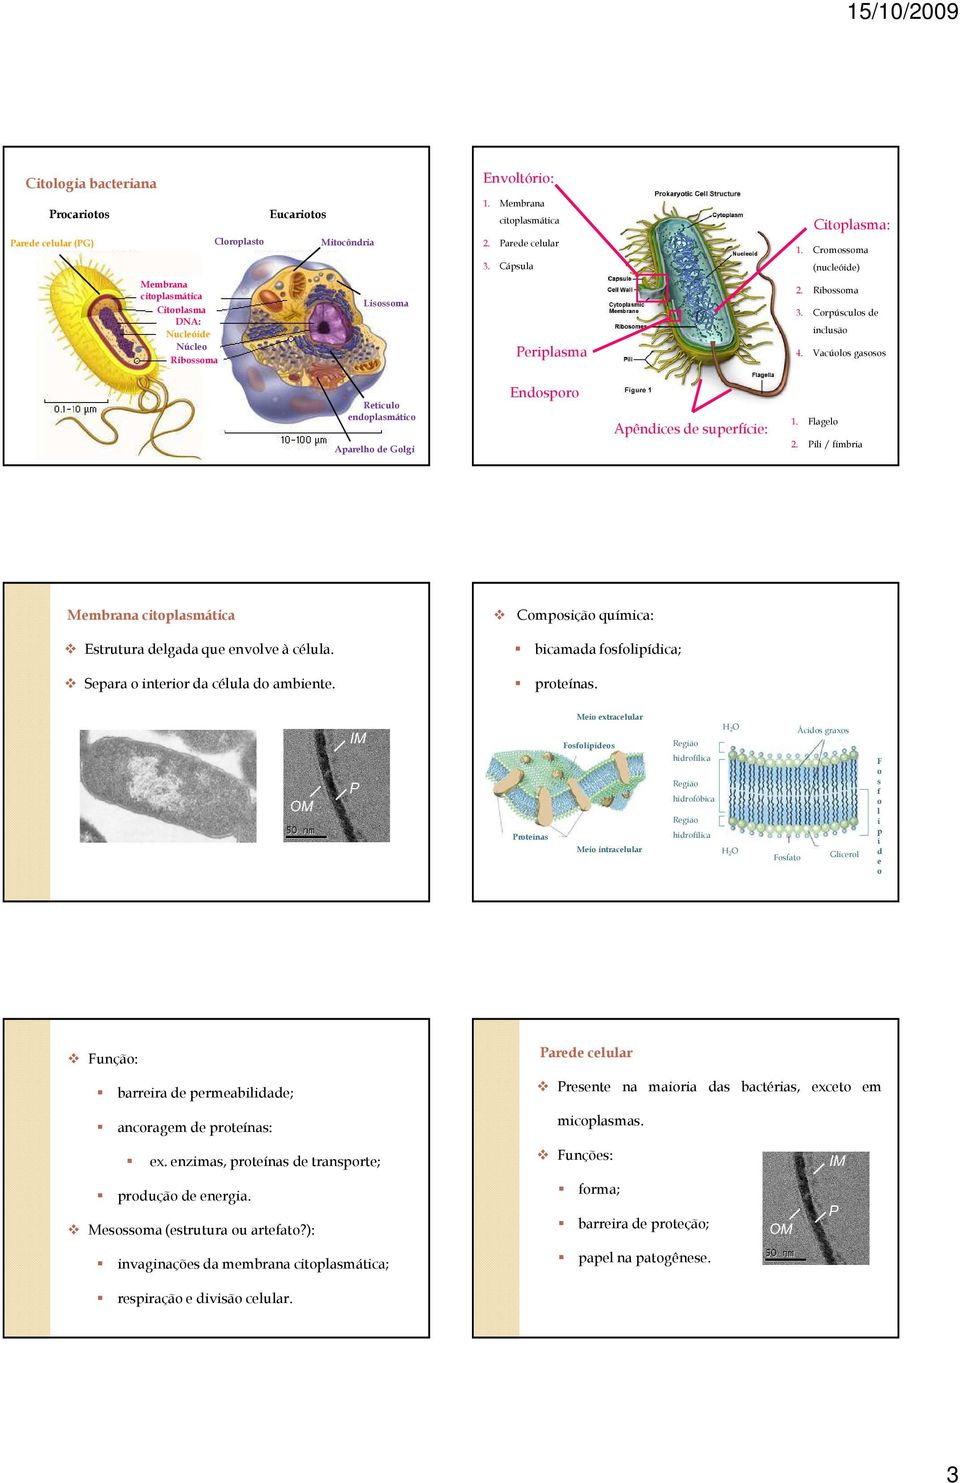 Vacúolos gasosos Retículo endoplasmático Aparelho de Golgi Endosporo Apêndices de superfície: 1. Flagelo 2. Pili / fímbria Membrana citoplasmática Estrutura delgada que envolve à célula.